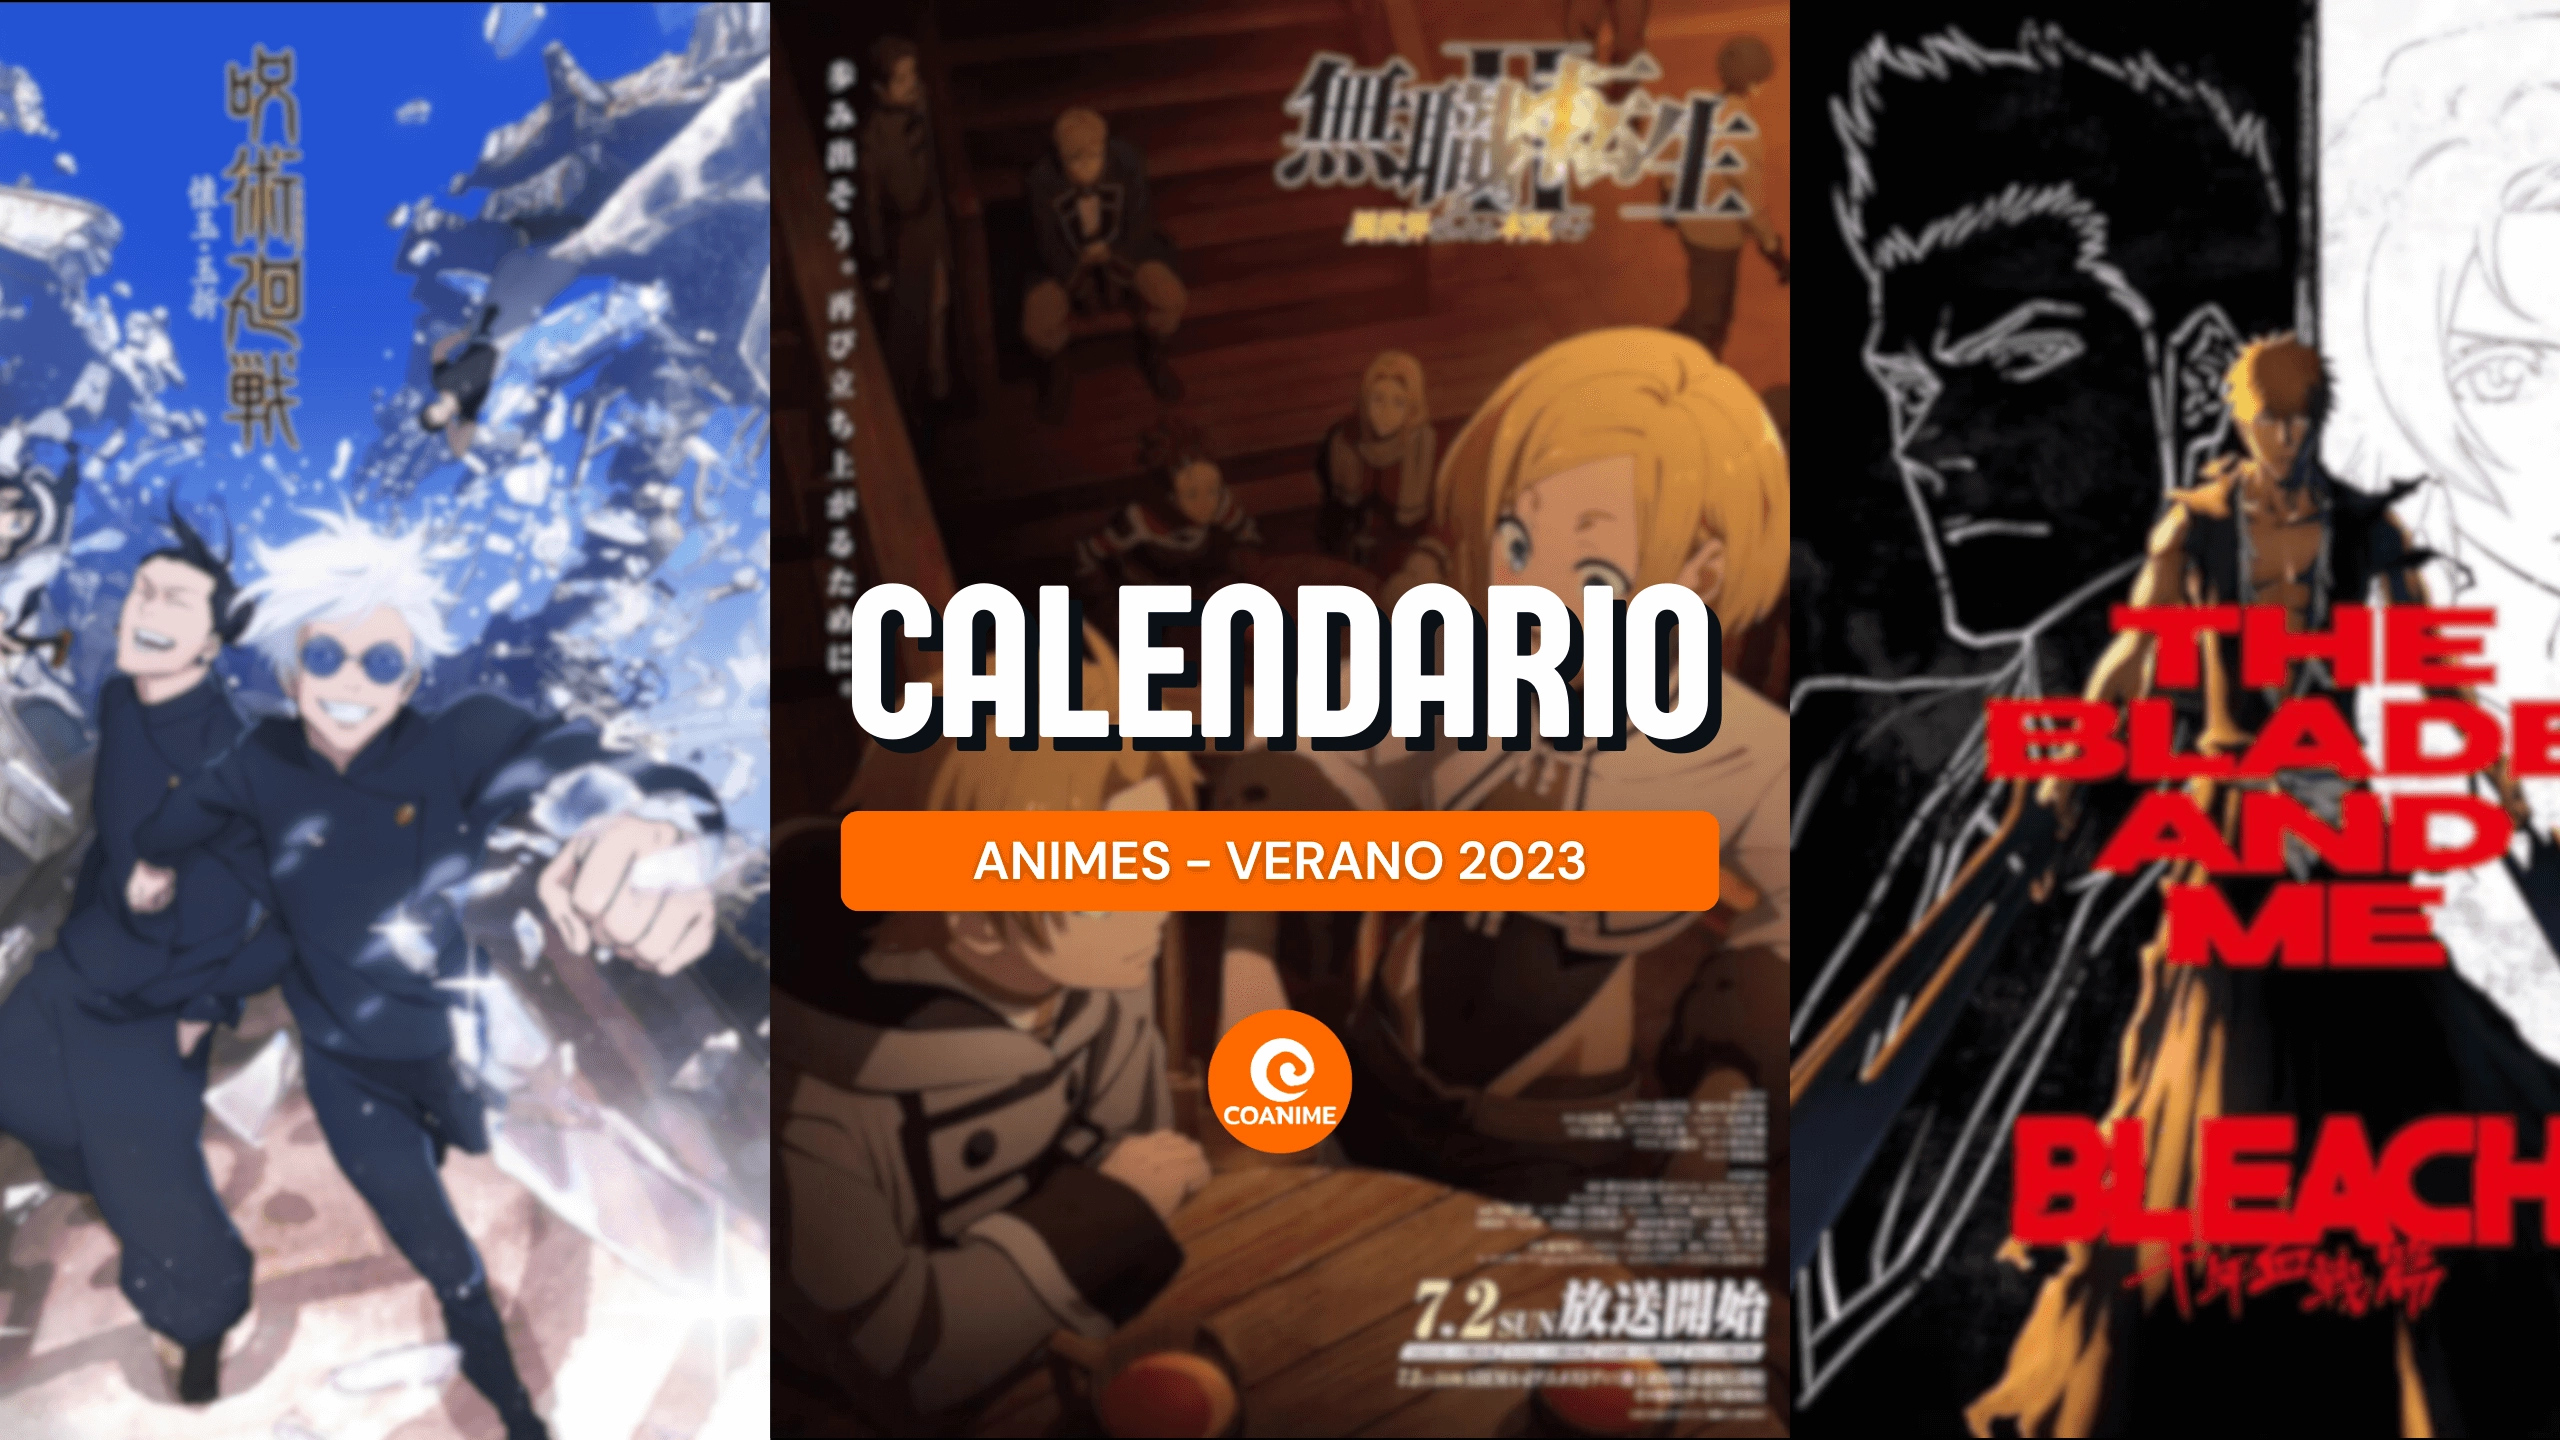 Calendario de estrenos de animes — Verano 2023 - Coanime.net